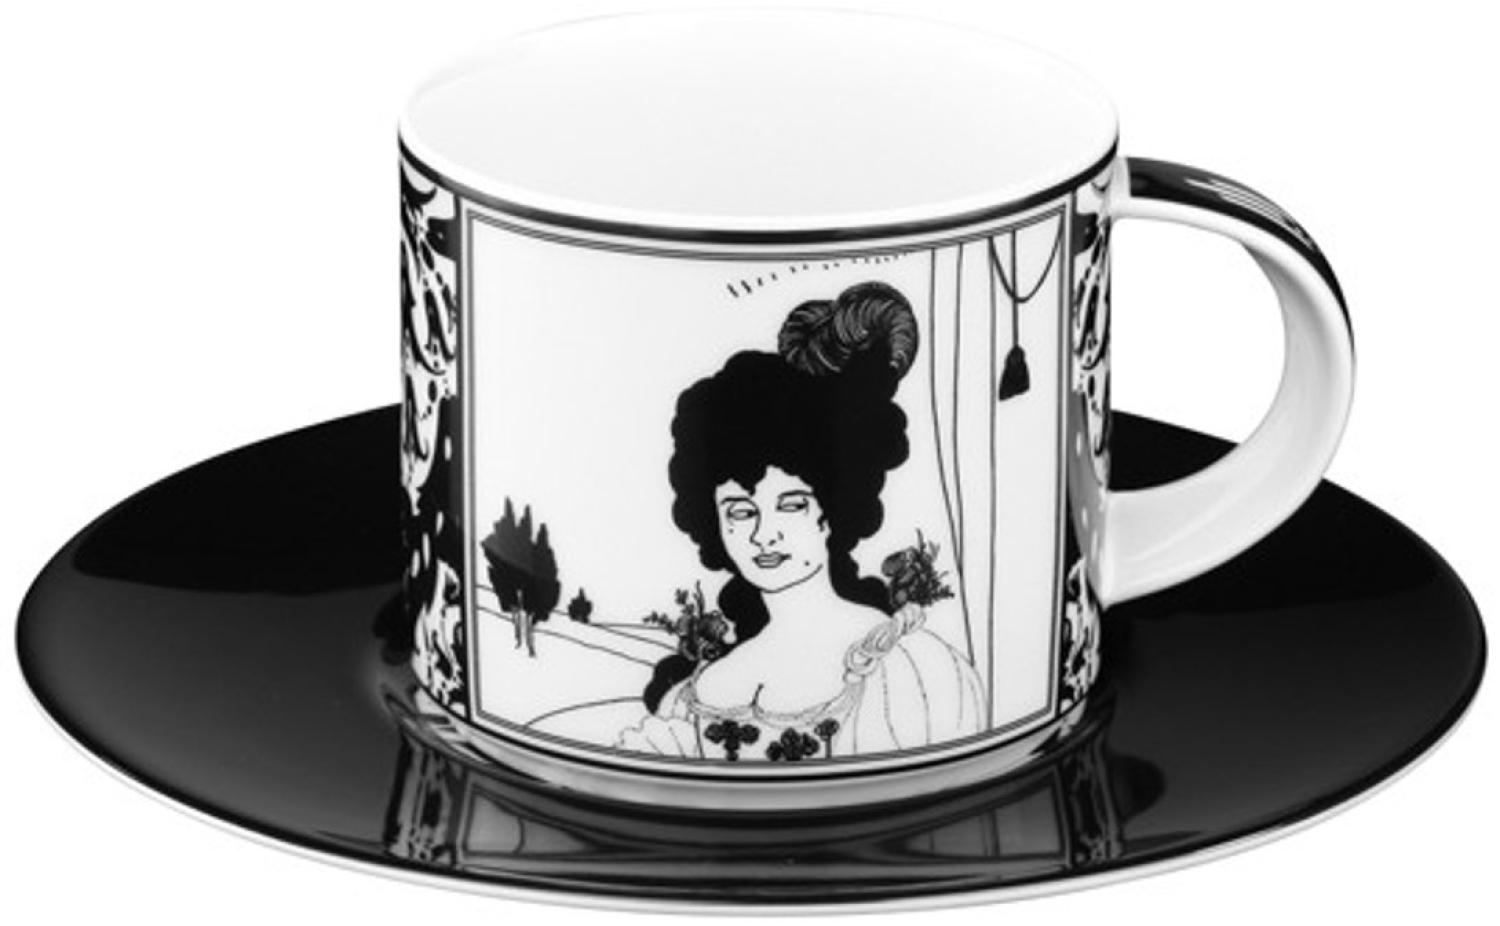 Handgearbeitete Kaffeetasse aus Porzellan mit einem Motiv von Audrey Beardsley Portrait 0,21 Ltr. - feinste Qualität aus der Tettau Porzellanfabrik - wunderschöne Tasse Bild 1